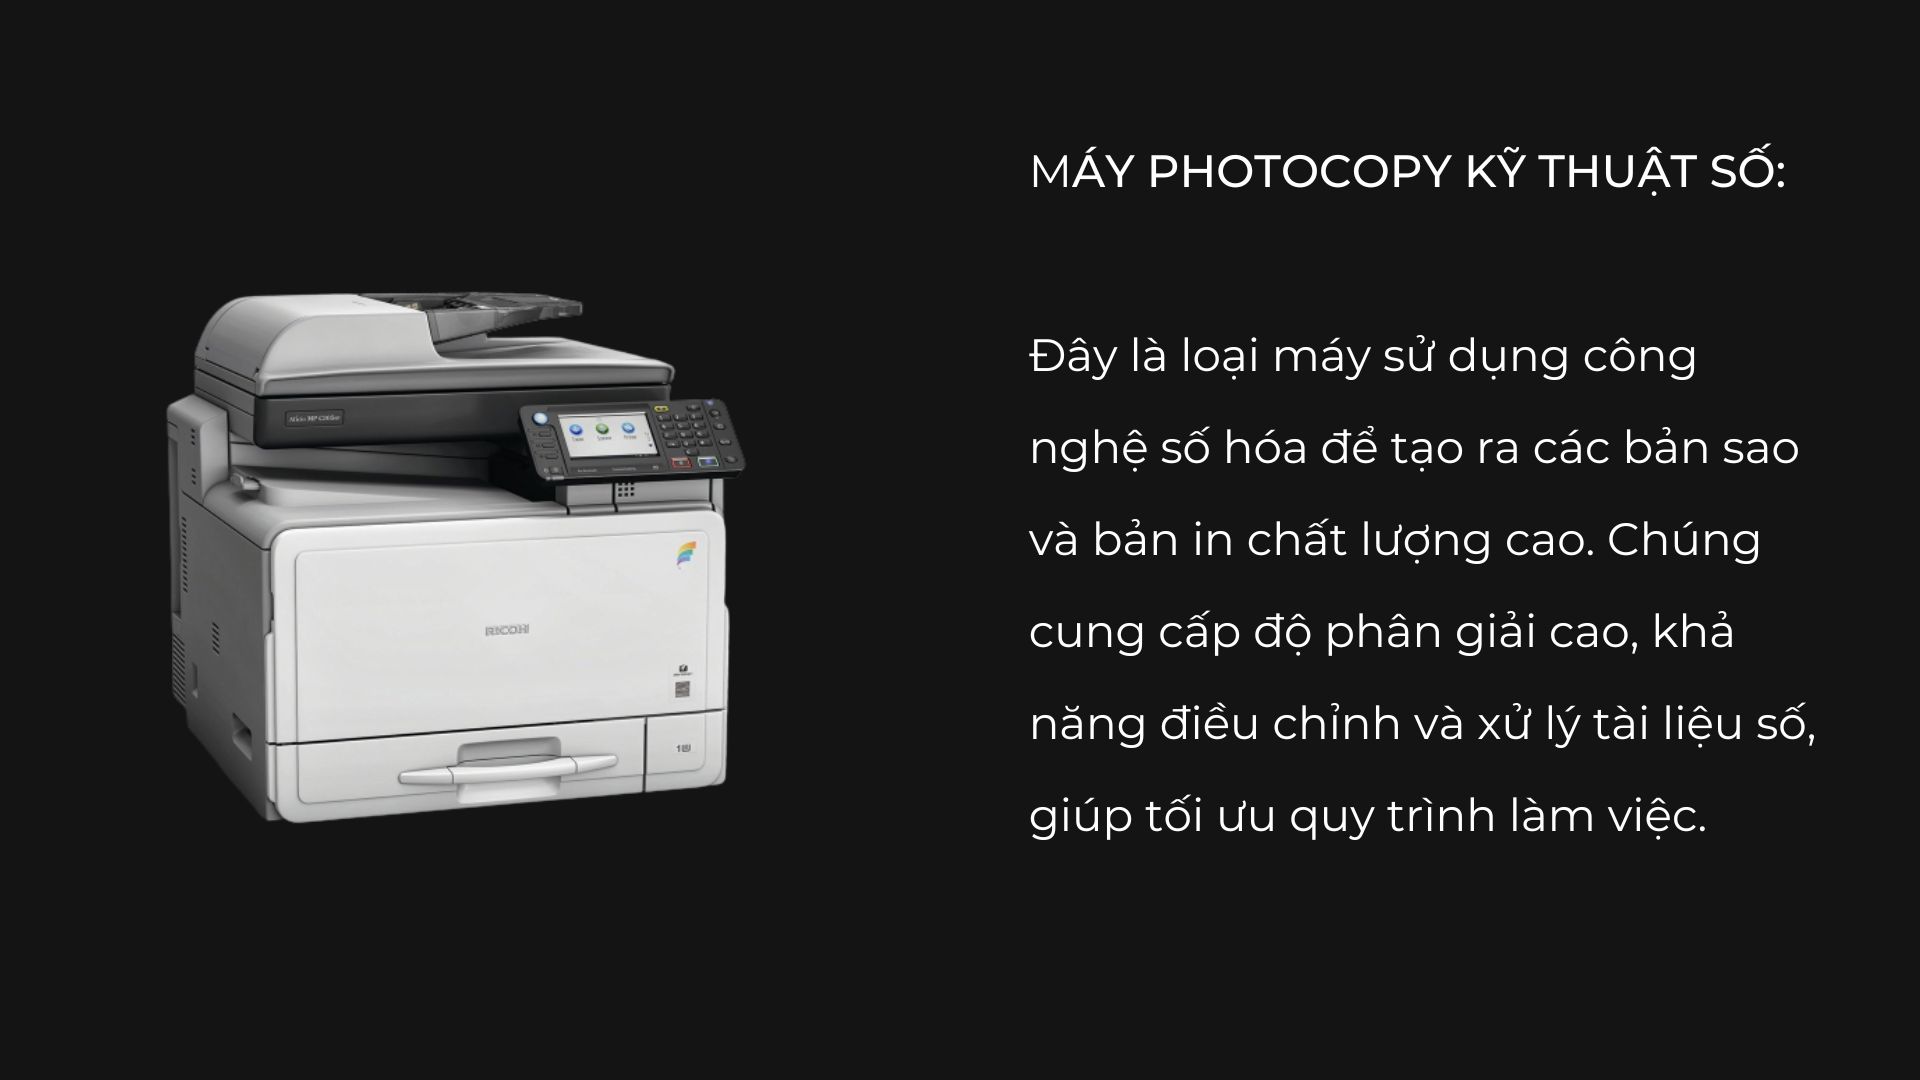 5-tieu-chi-lua-chon-may-photocopy-van-phong-cuc-chat-luong-07